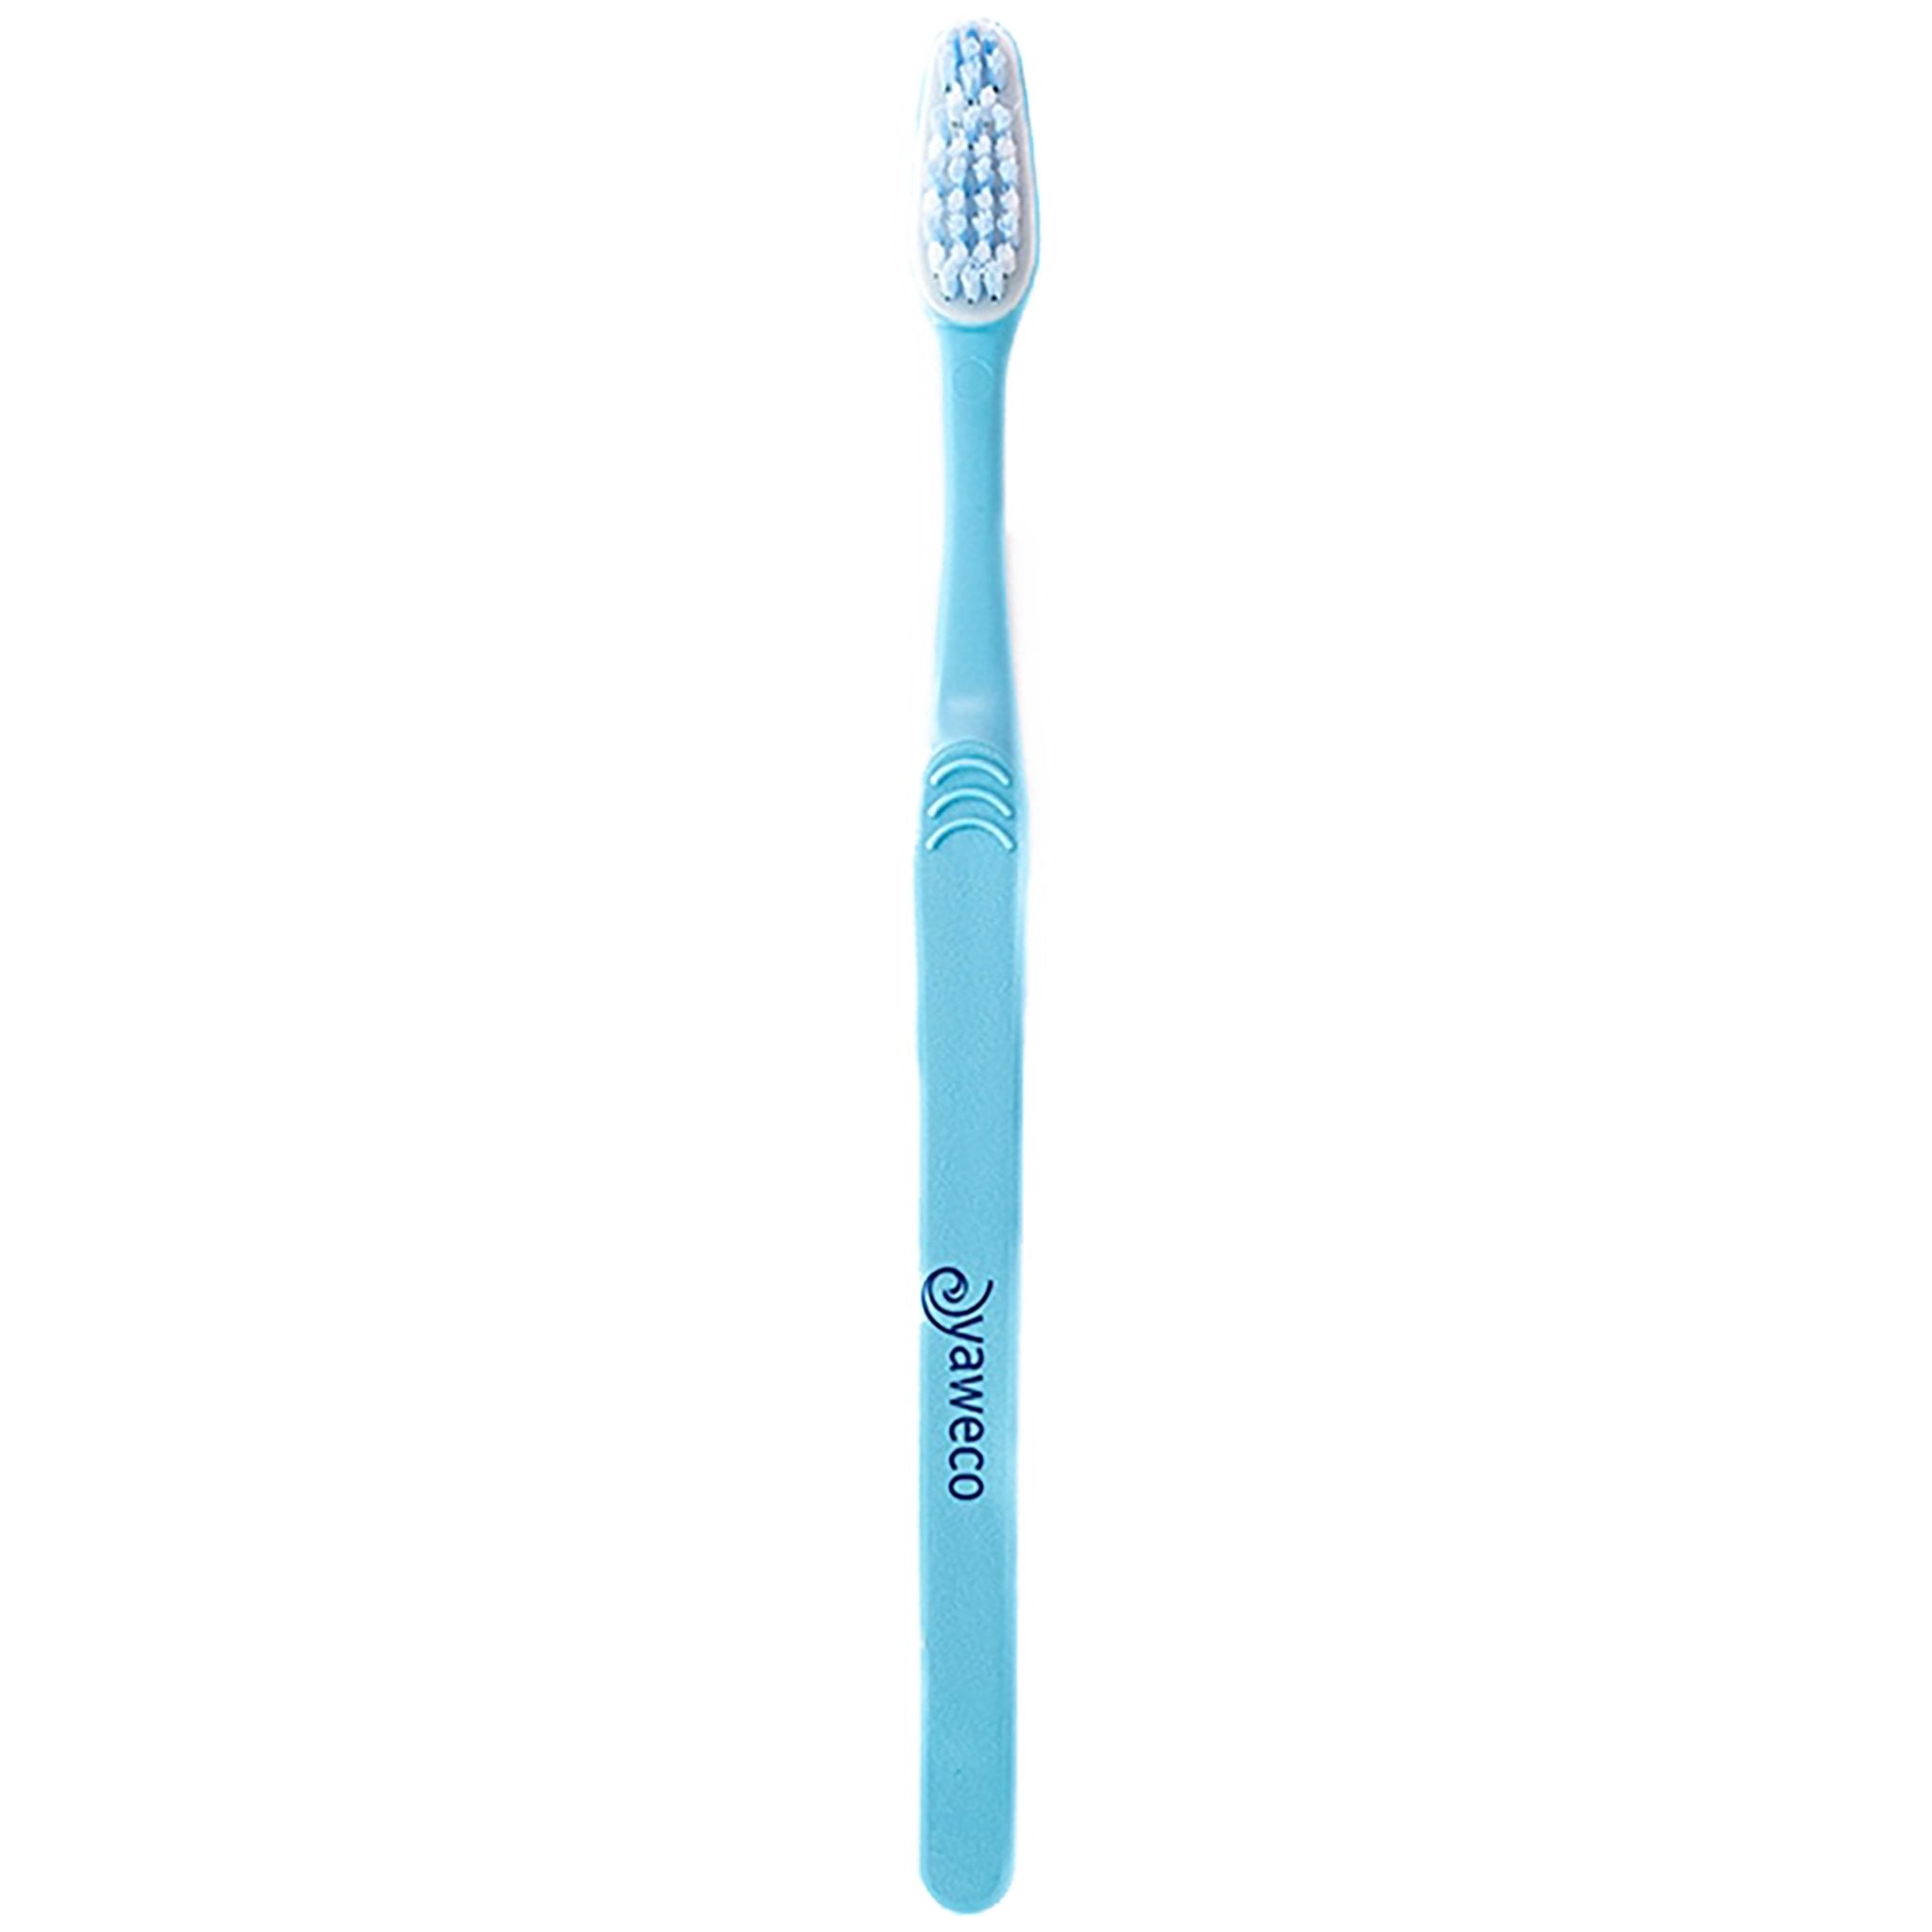 VEGAN Biobased Toothbrush - Nylon Soft - mypure.co.uk